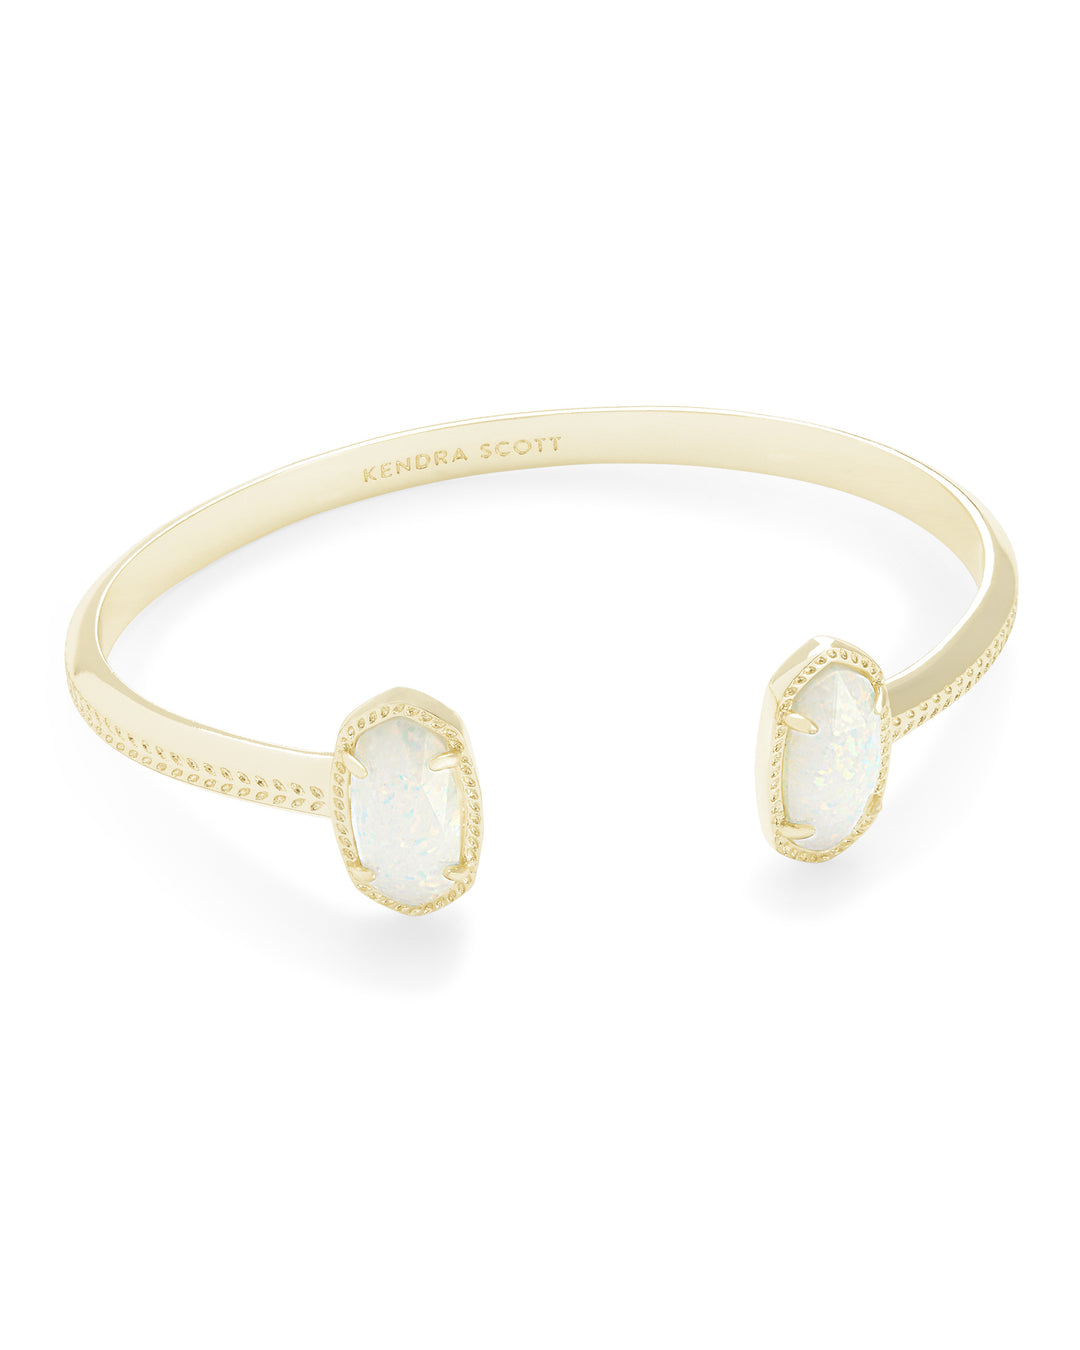 Kendra Scott Elton Gold Cuff Bracelet in Gold White Opal